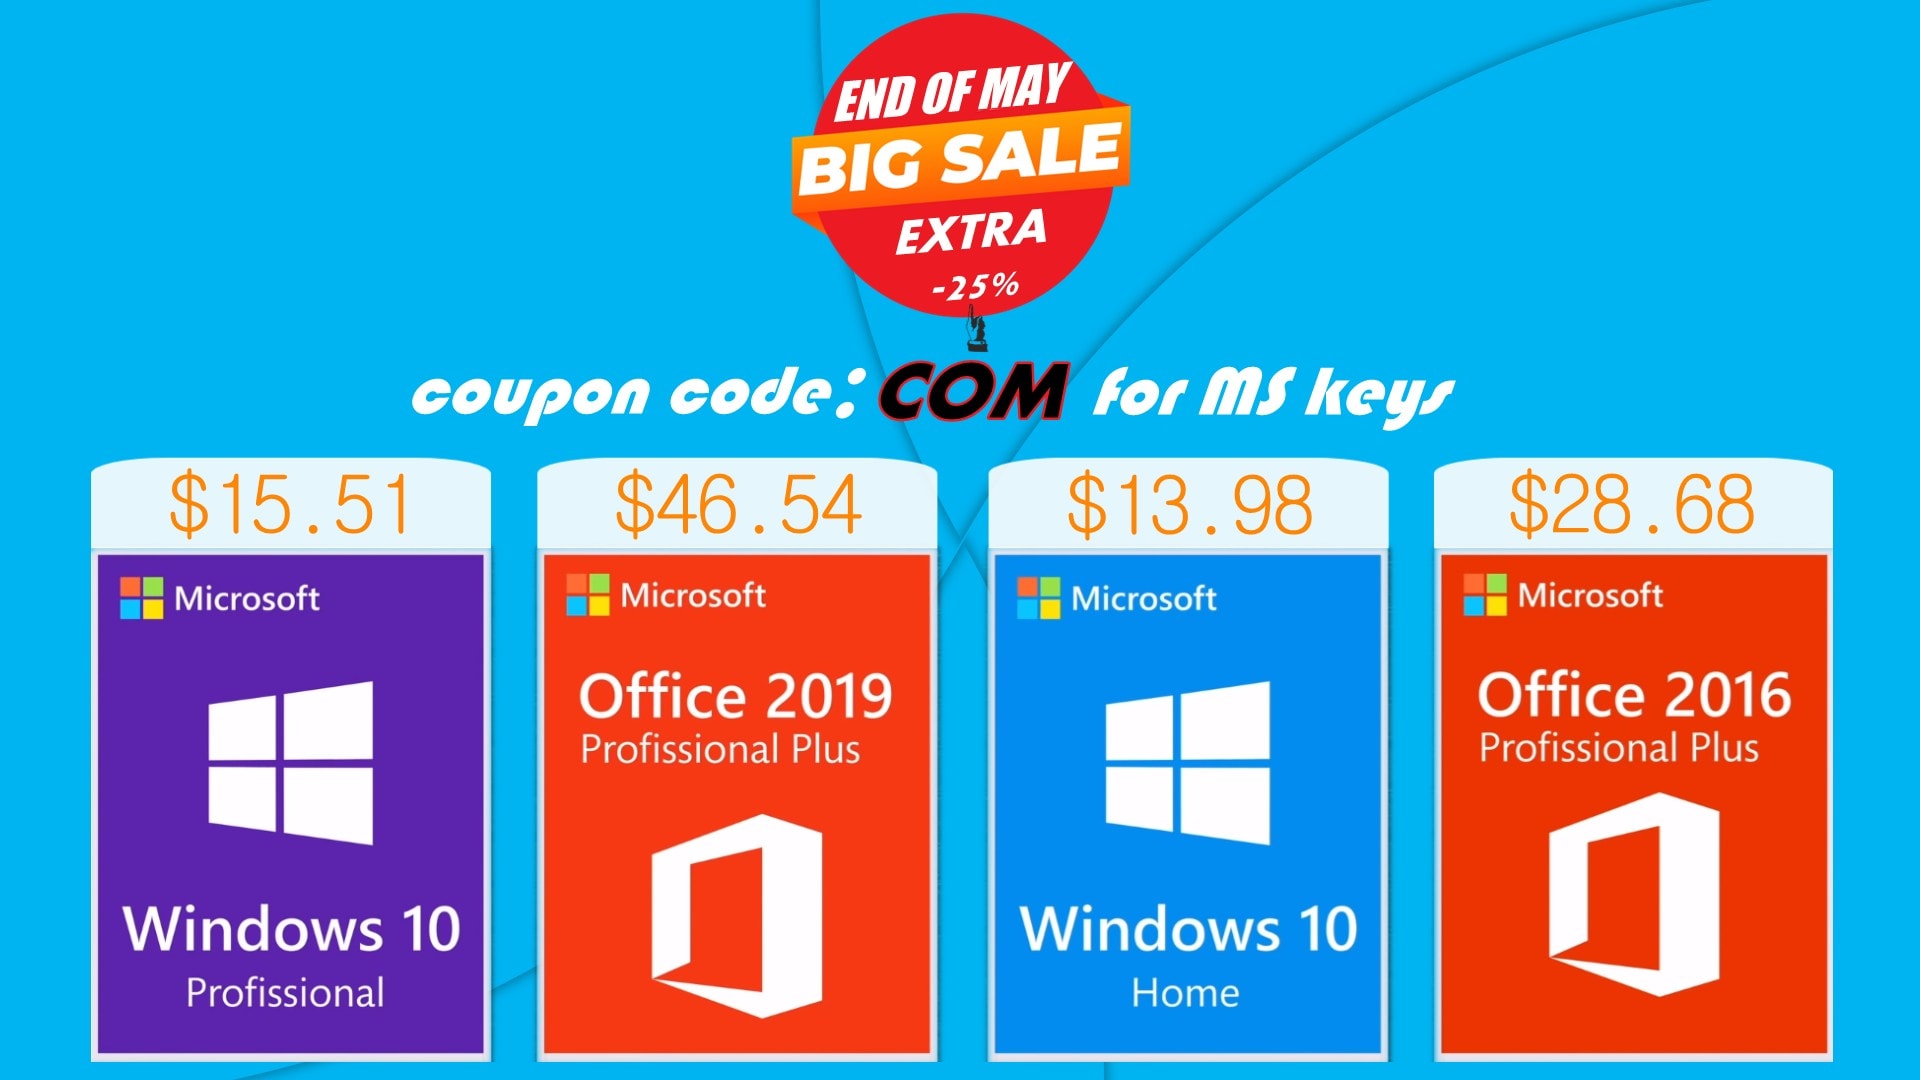 If you'd like to save money on genuine Microsoft software, head to Keysbuff.com.